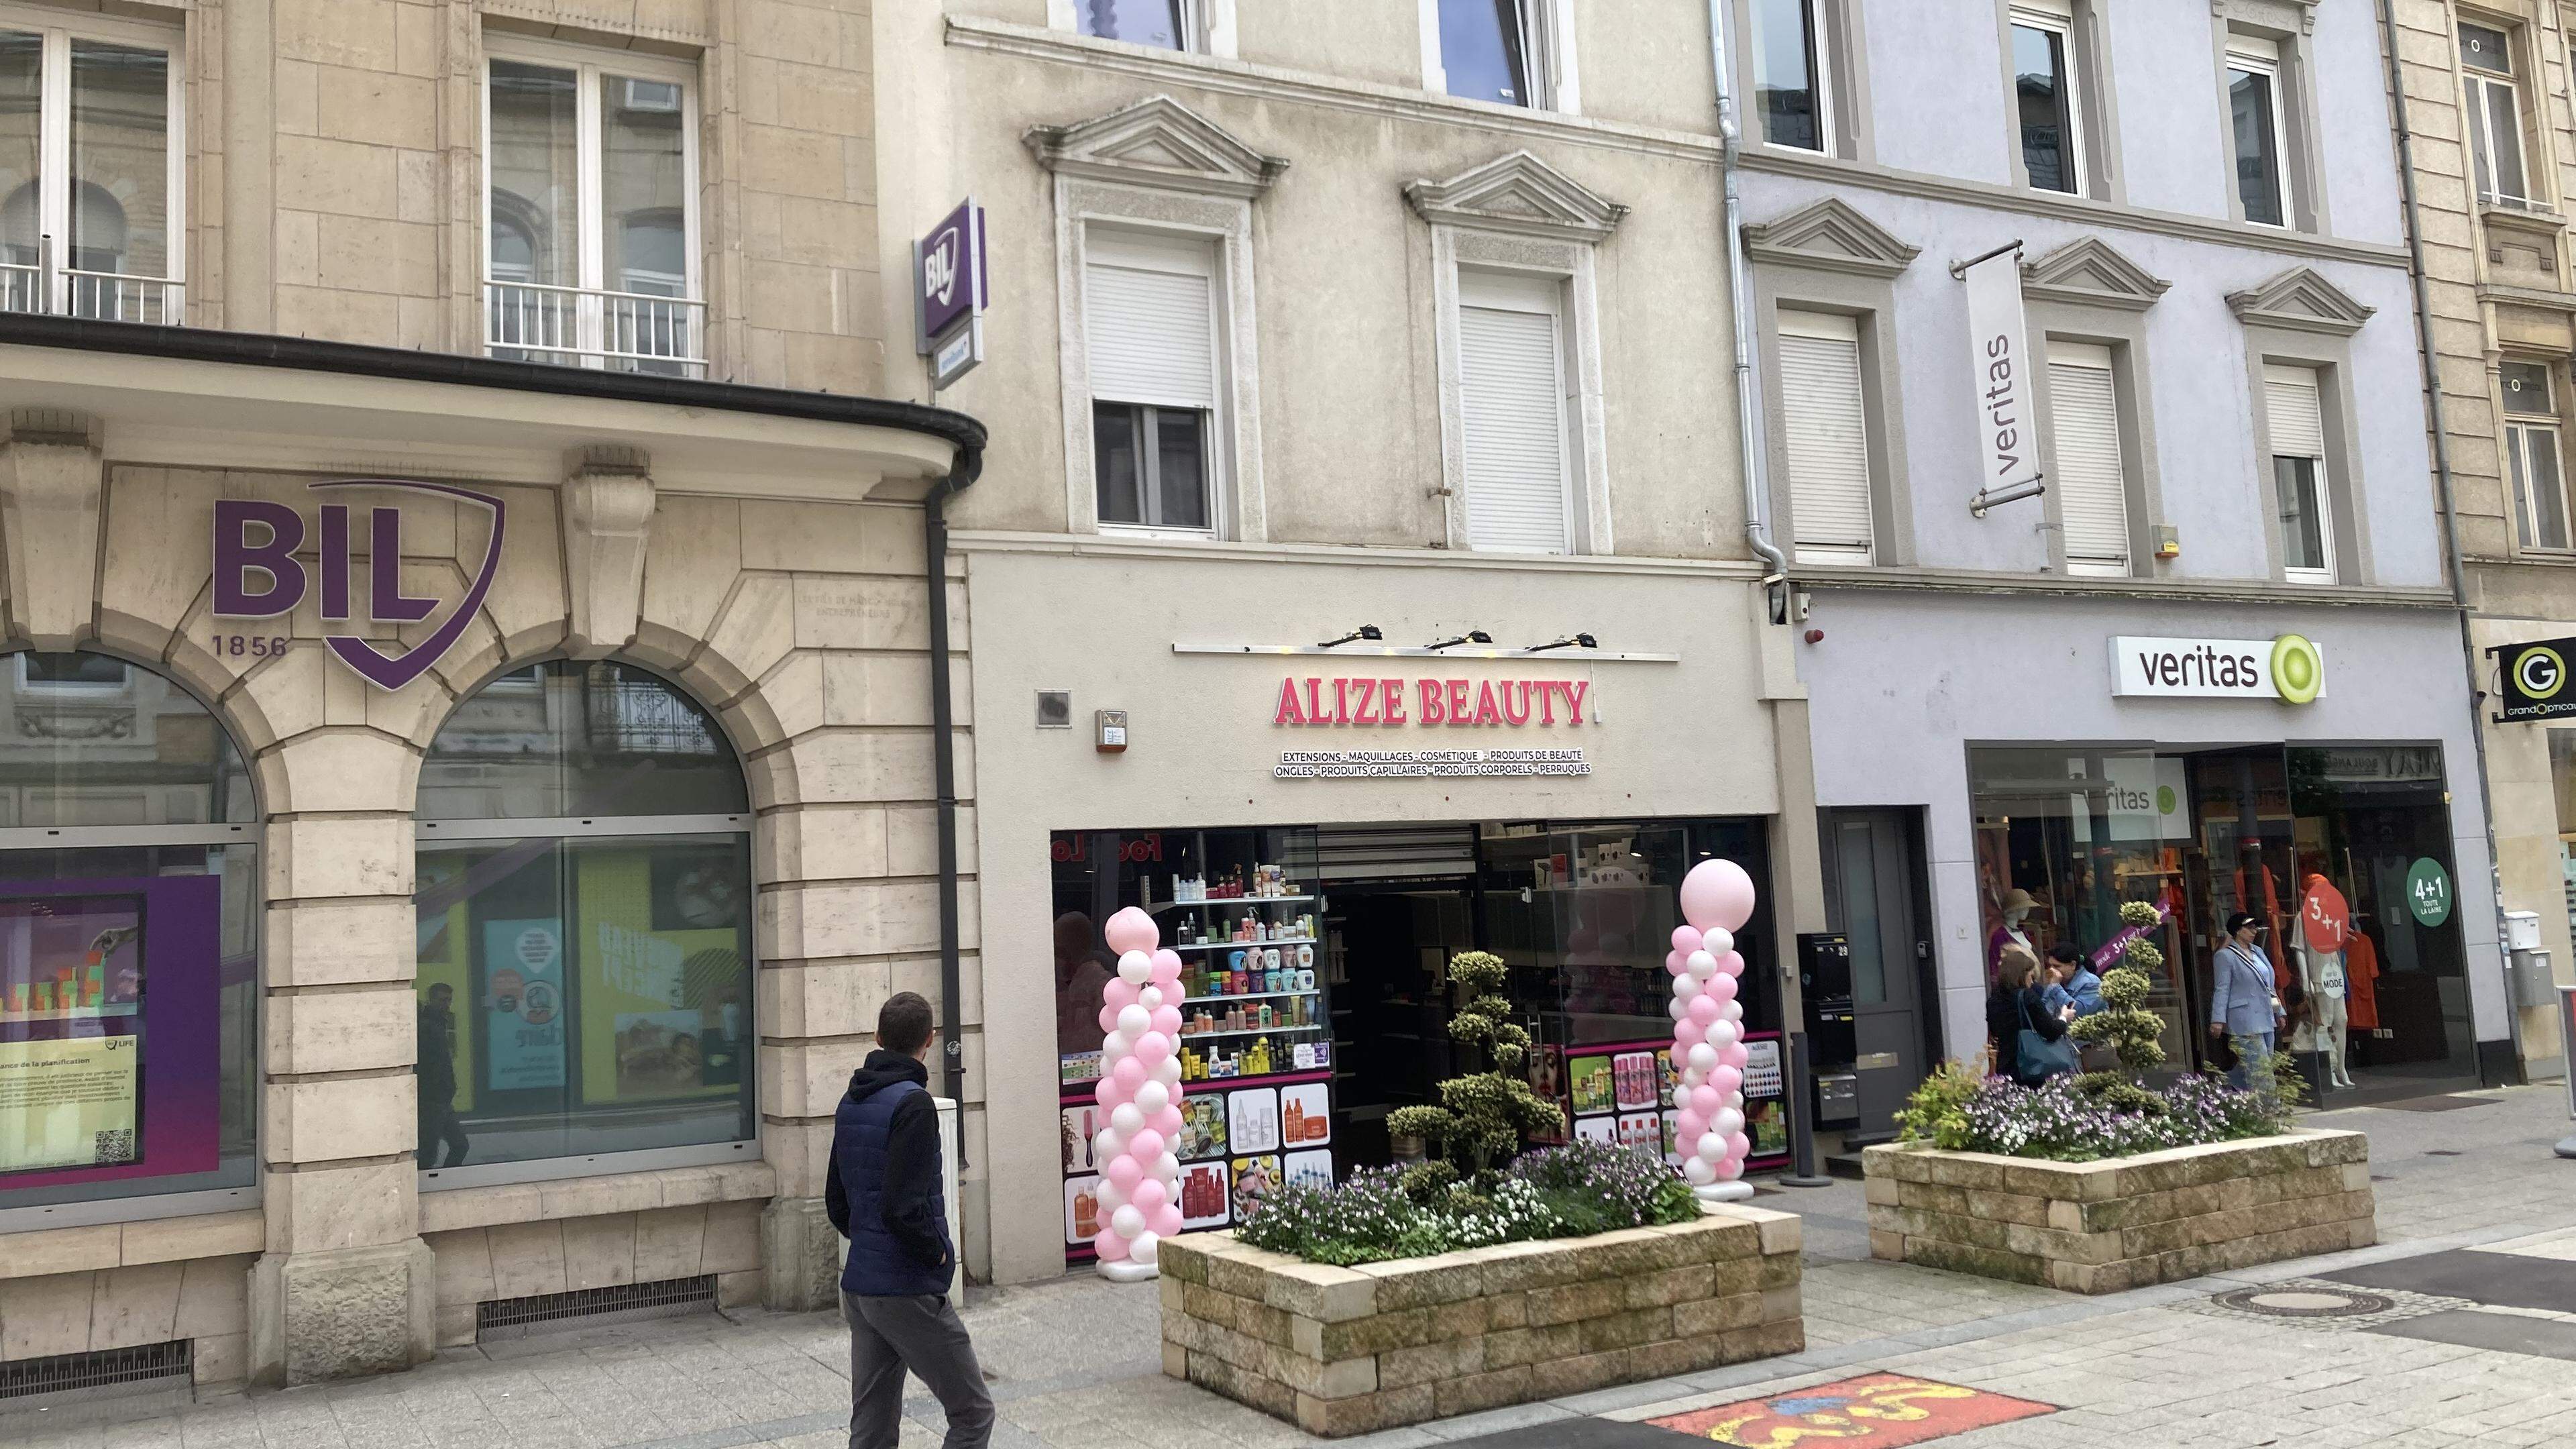 La semaine dernière, un homme d’affaires actif au niveau international a ouvert une nouvelle succursale de sa marque Alize Beauty à Esch/Alzette.